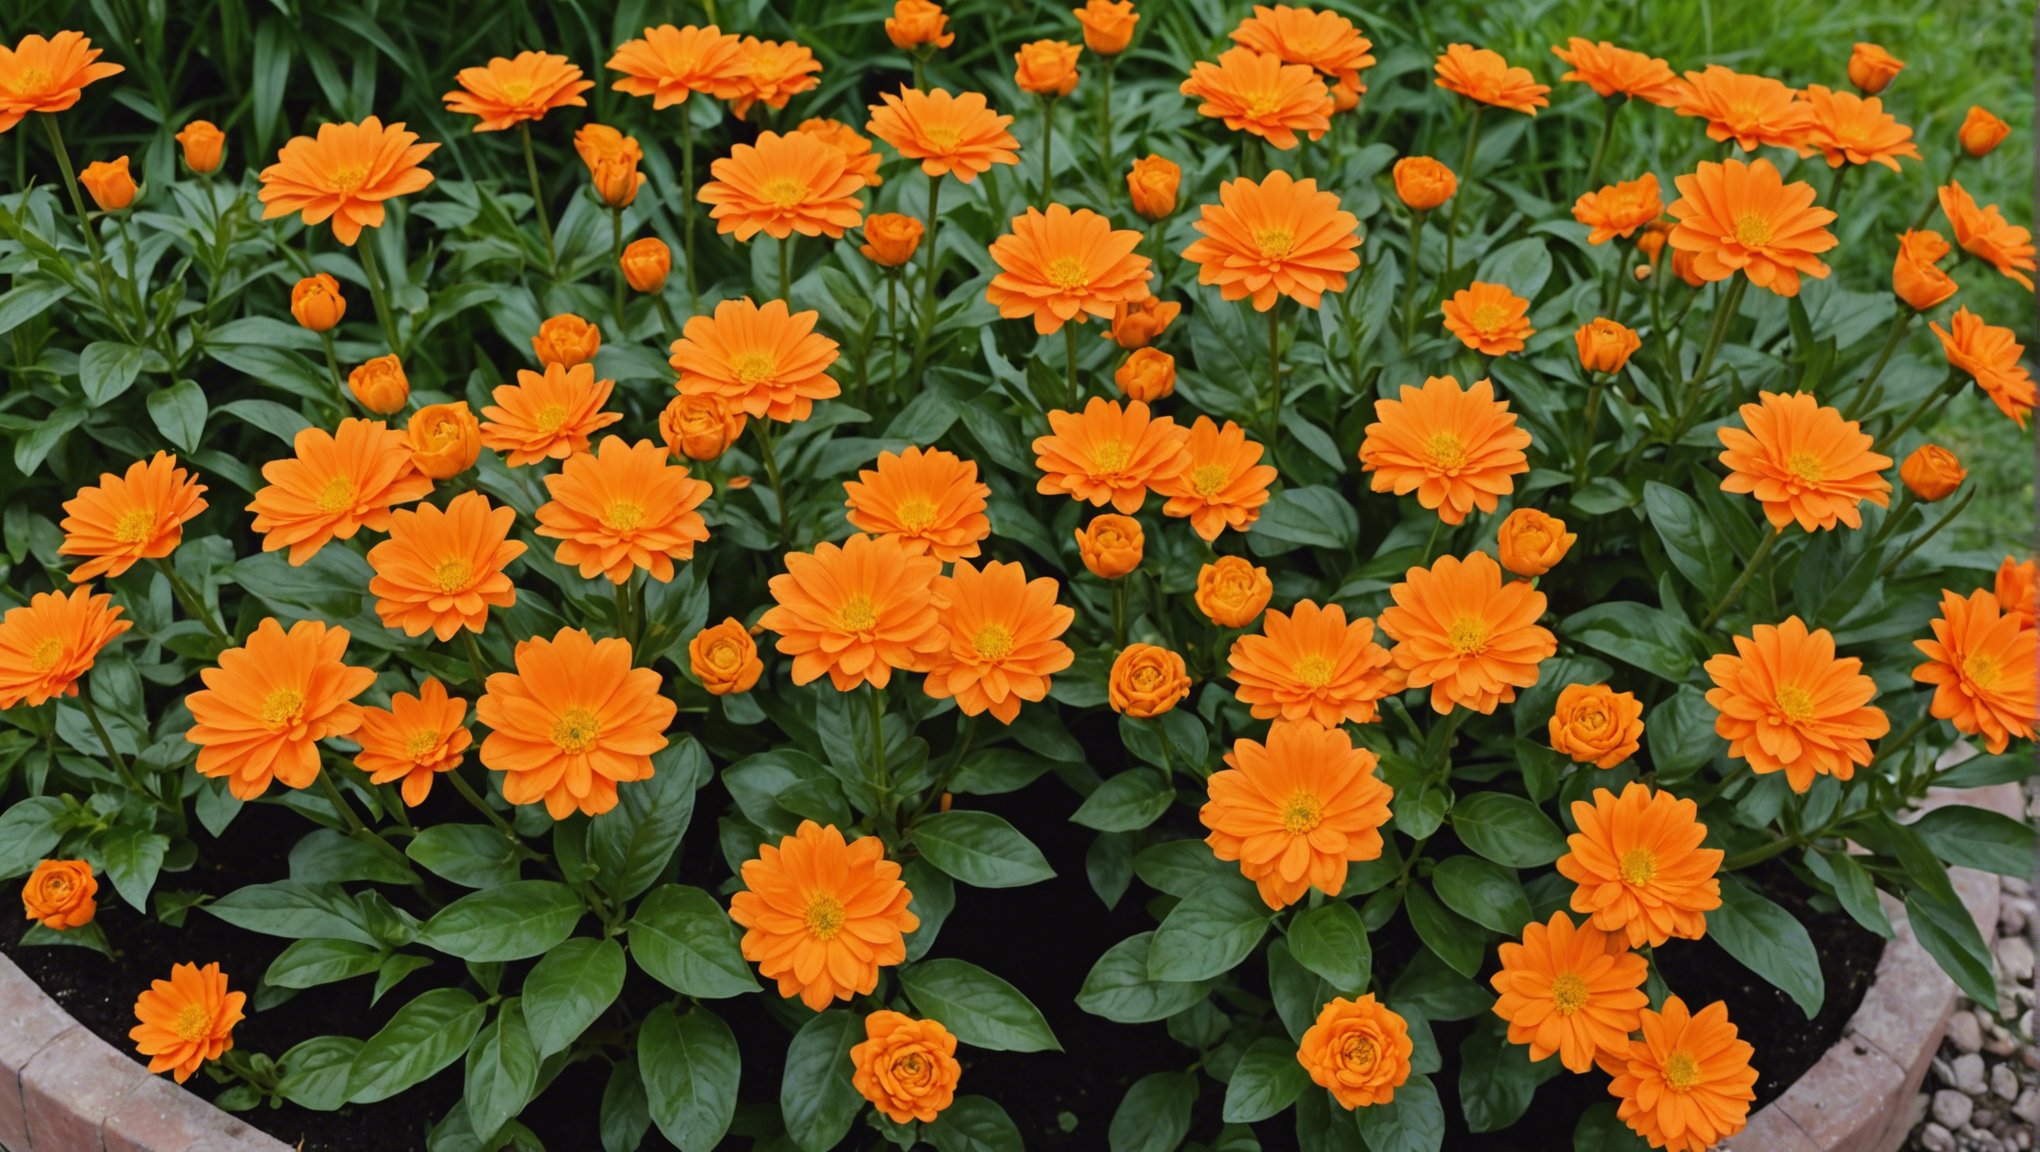 découvrez une sélection des plus belles fleurs orange à cultiver dans votre jardin et apportez une touche éclatante à votre espace extérieur.